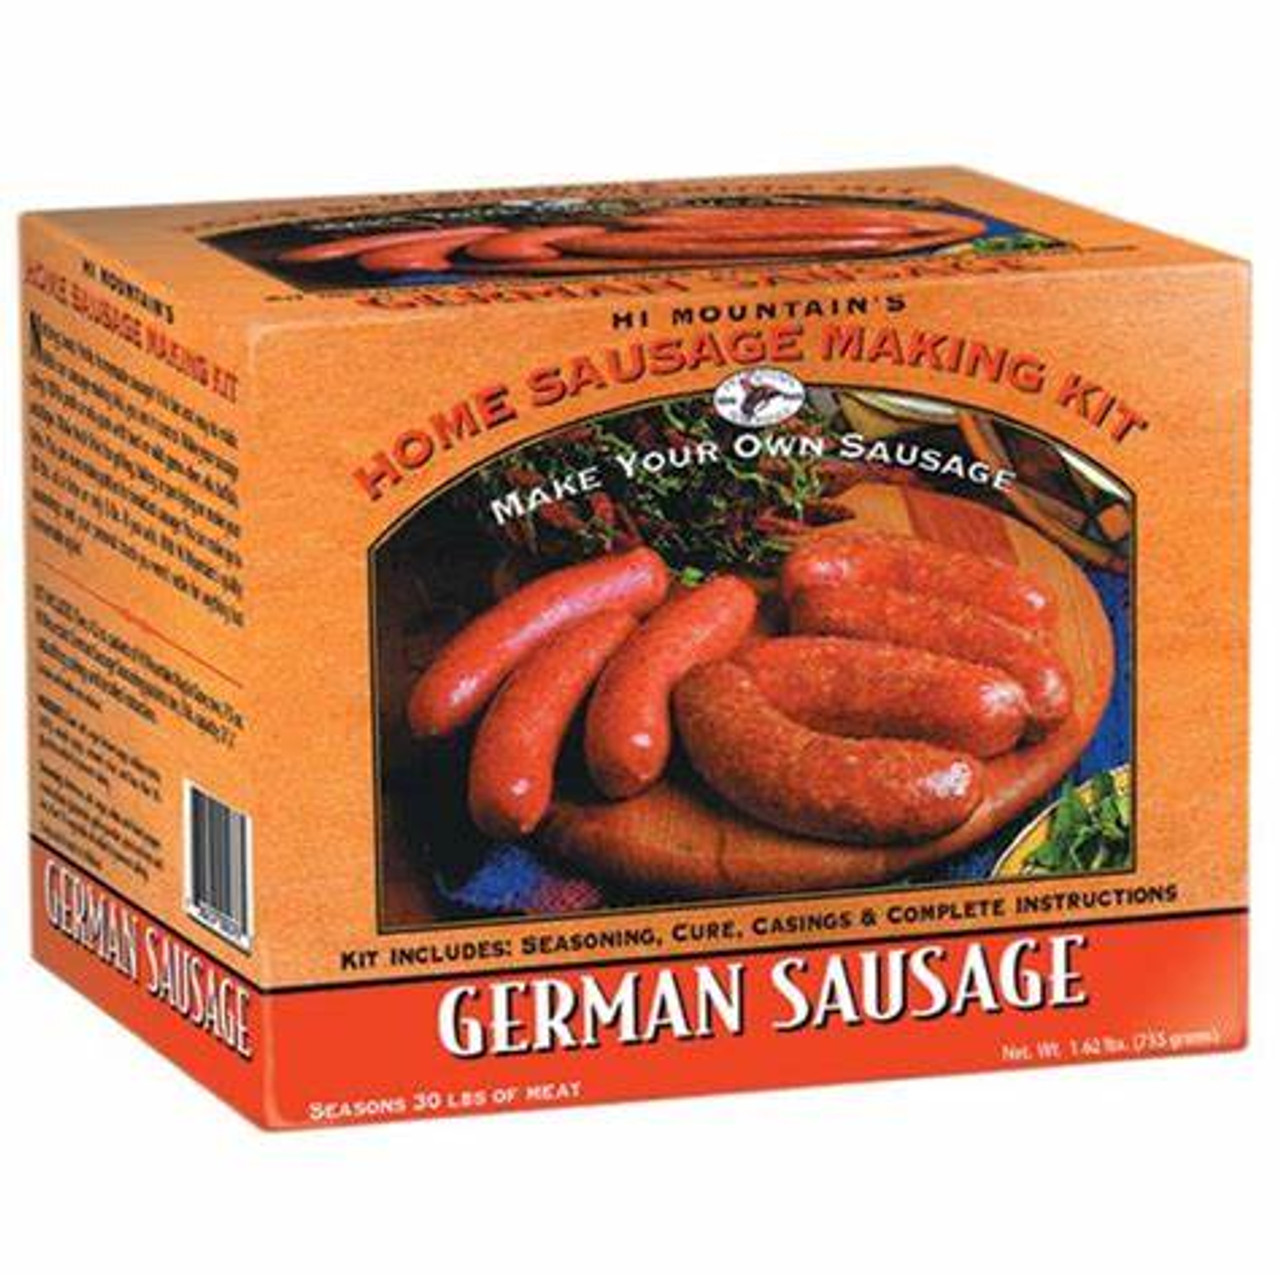 Hi Mountain German Sausage Kit Sausage Making Kit